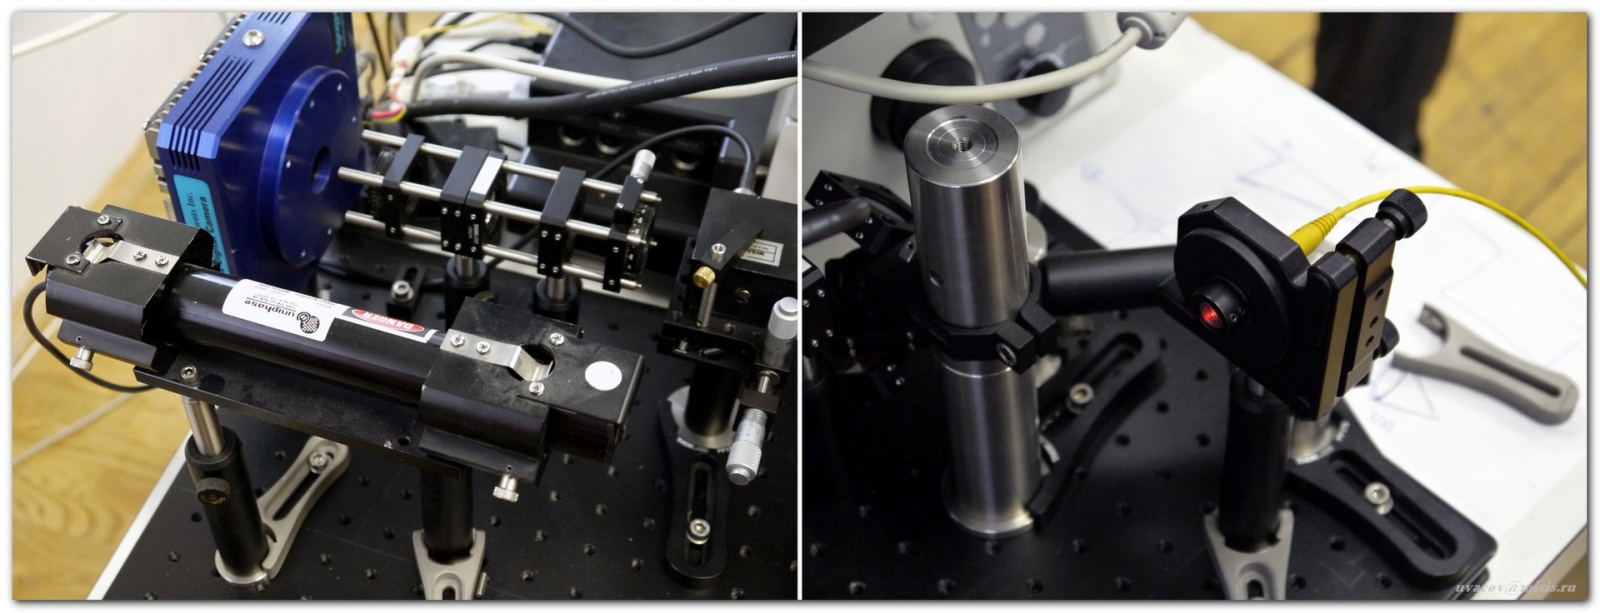 «Диагностировать рак поможет лазер», или Как устроен лазерный флуоресцентный гиперспектральный микроскоп - 7